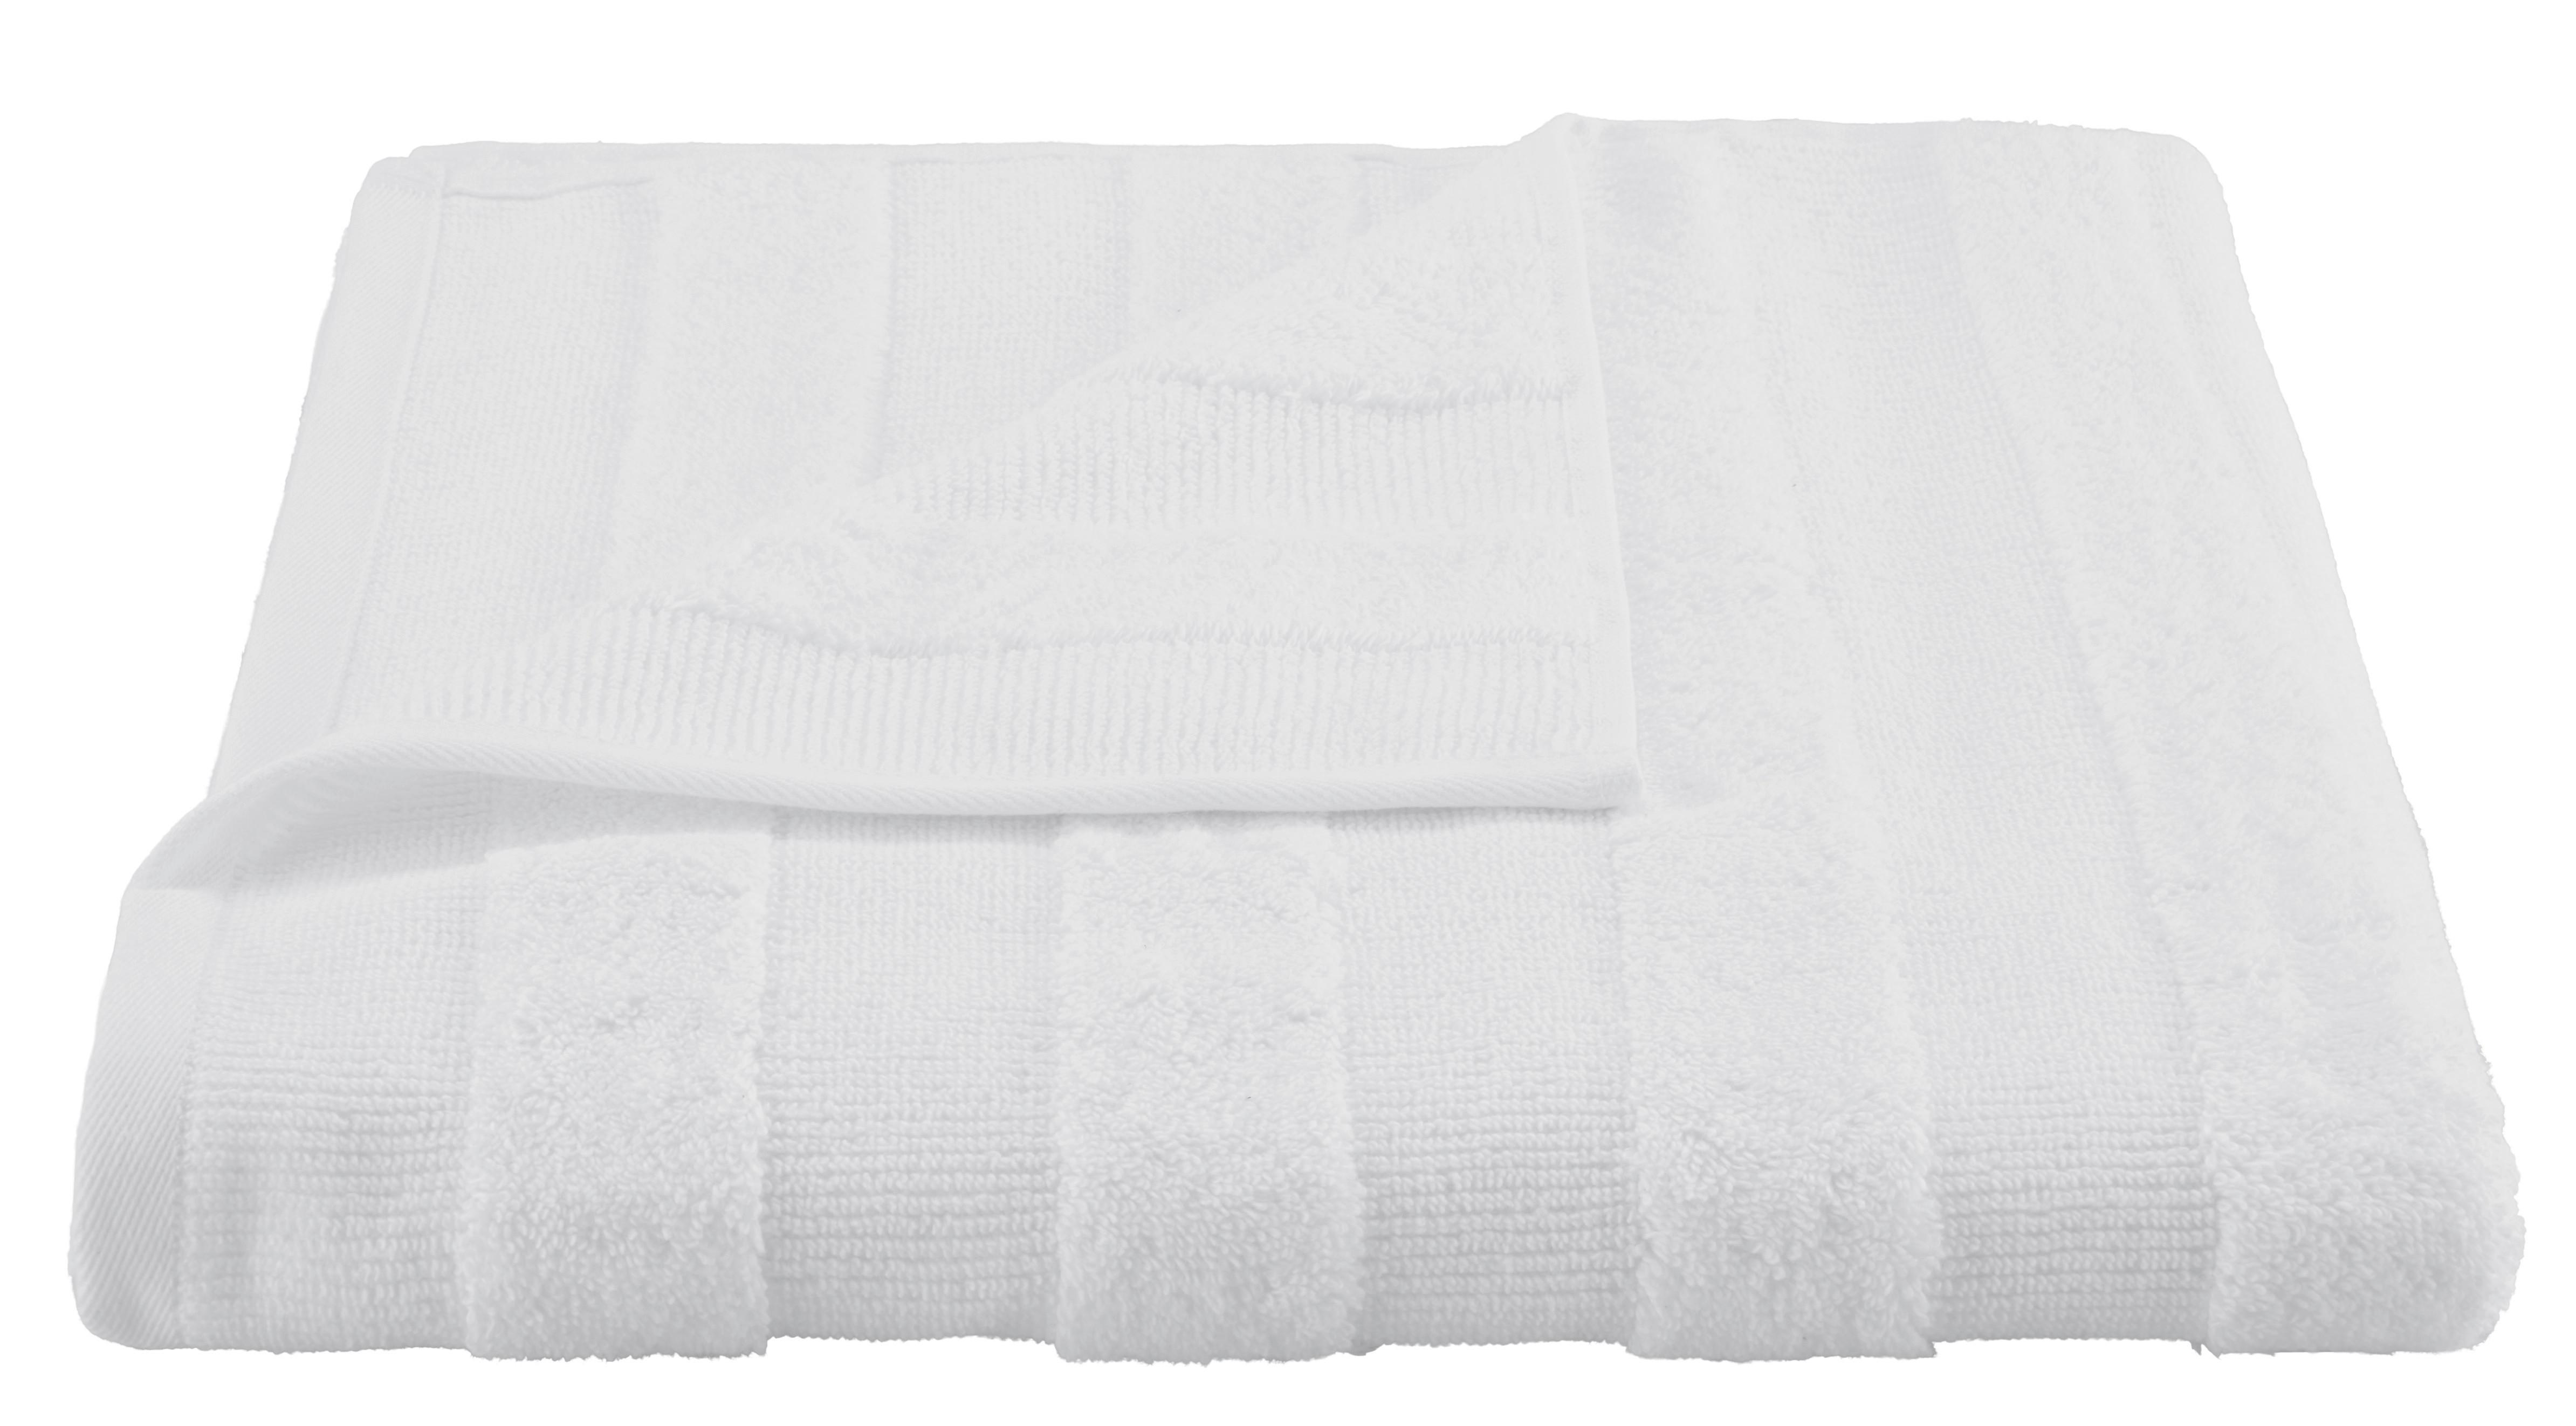 Duschtuch Chris in Weiß ca. 70x140cm - Weiß, Textil (70/140cm) - Premium Living